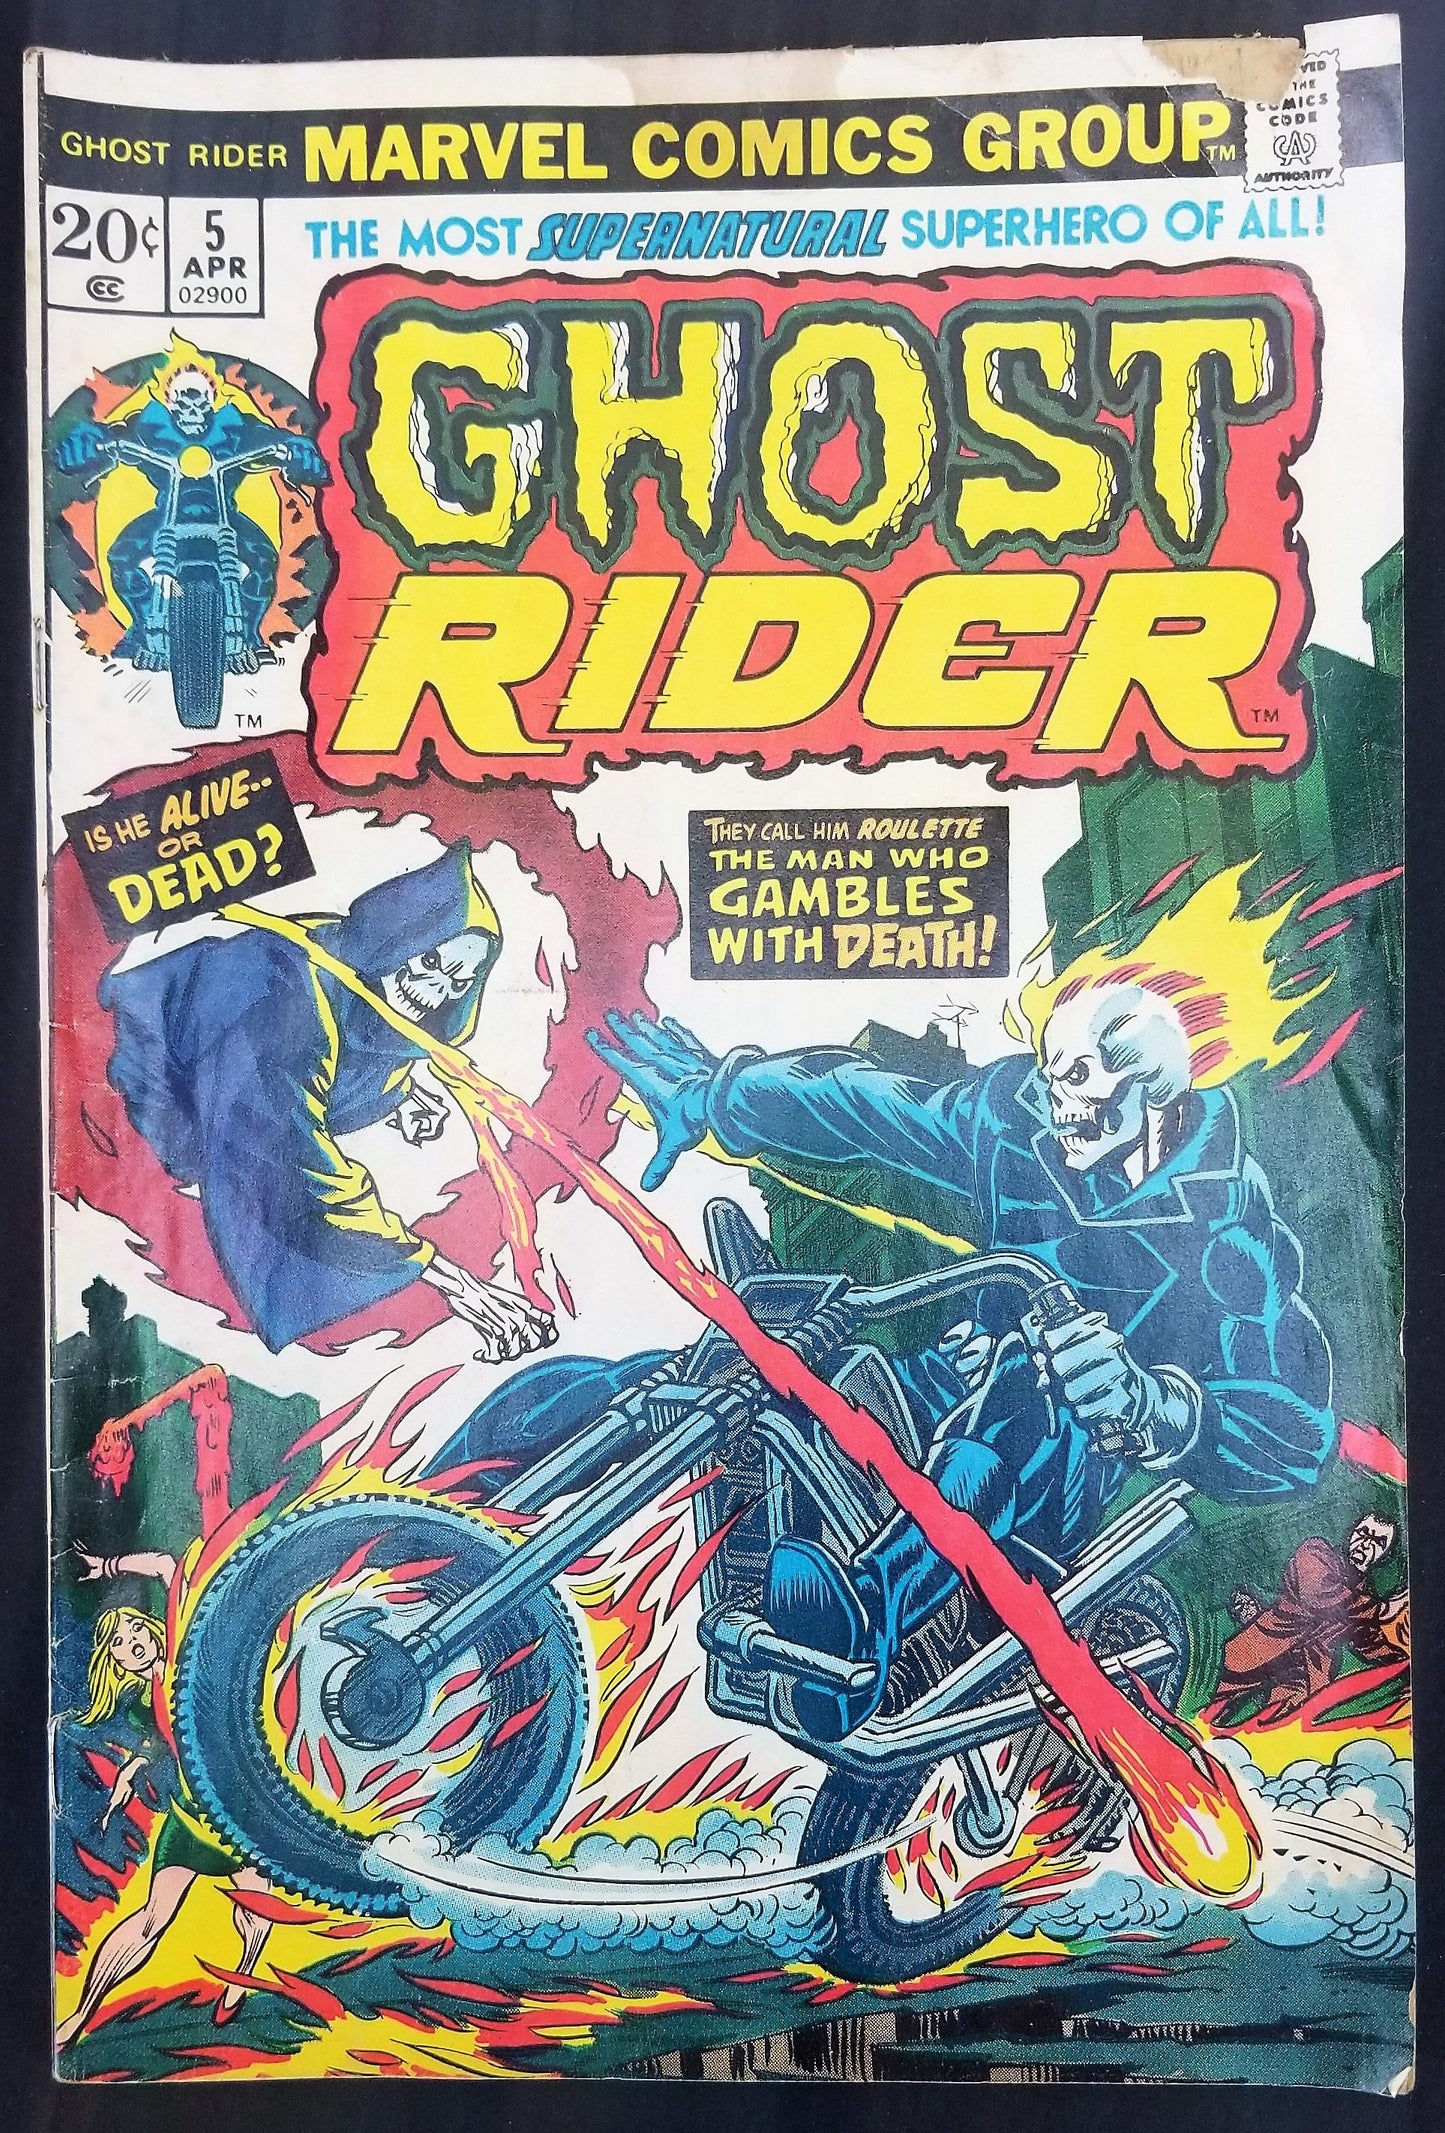 Ghost Rider No. 5, Marvel Comics, April 1974